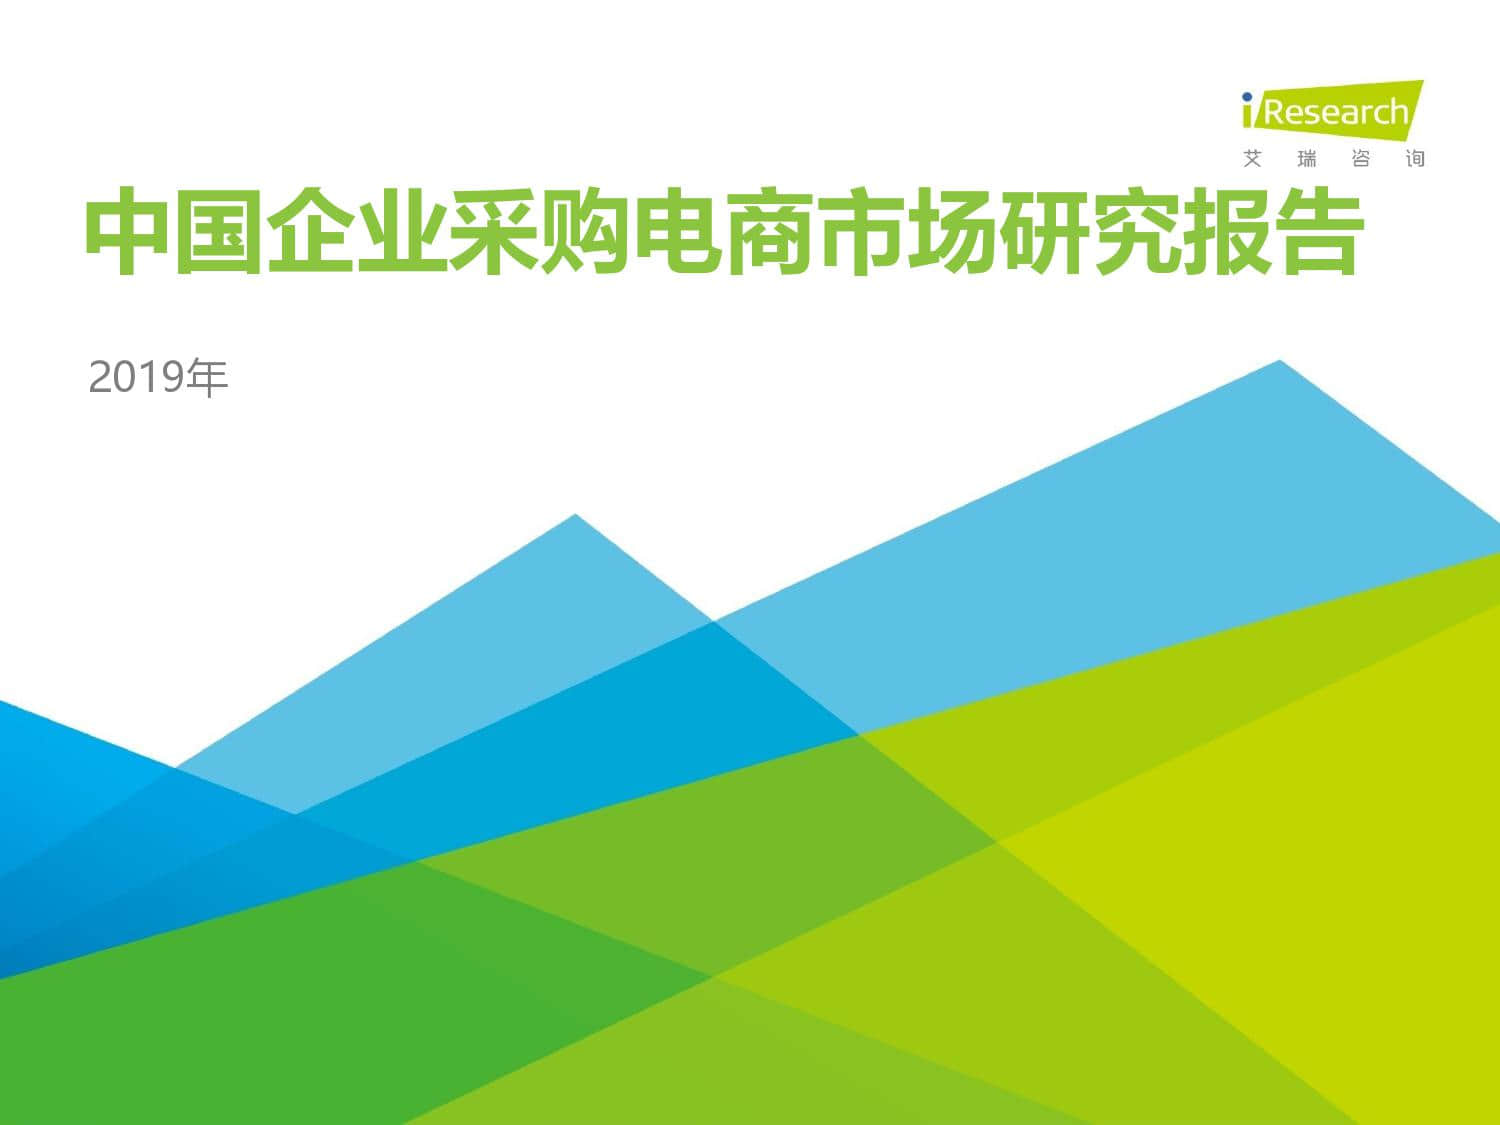 2019年中国企业采购电商市场研究报告_000001.jpg